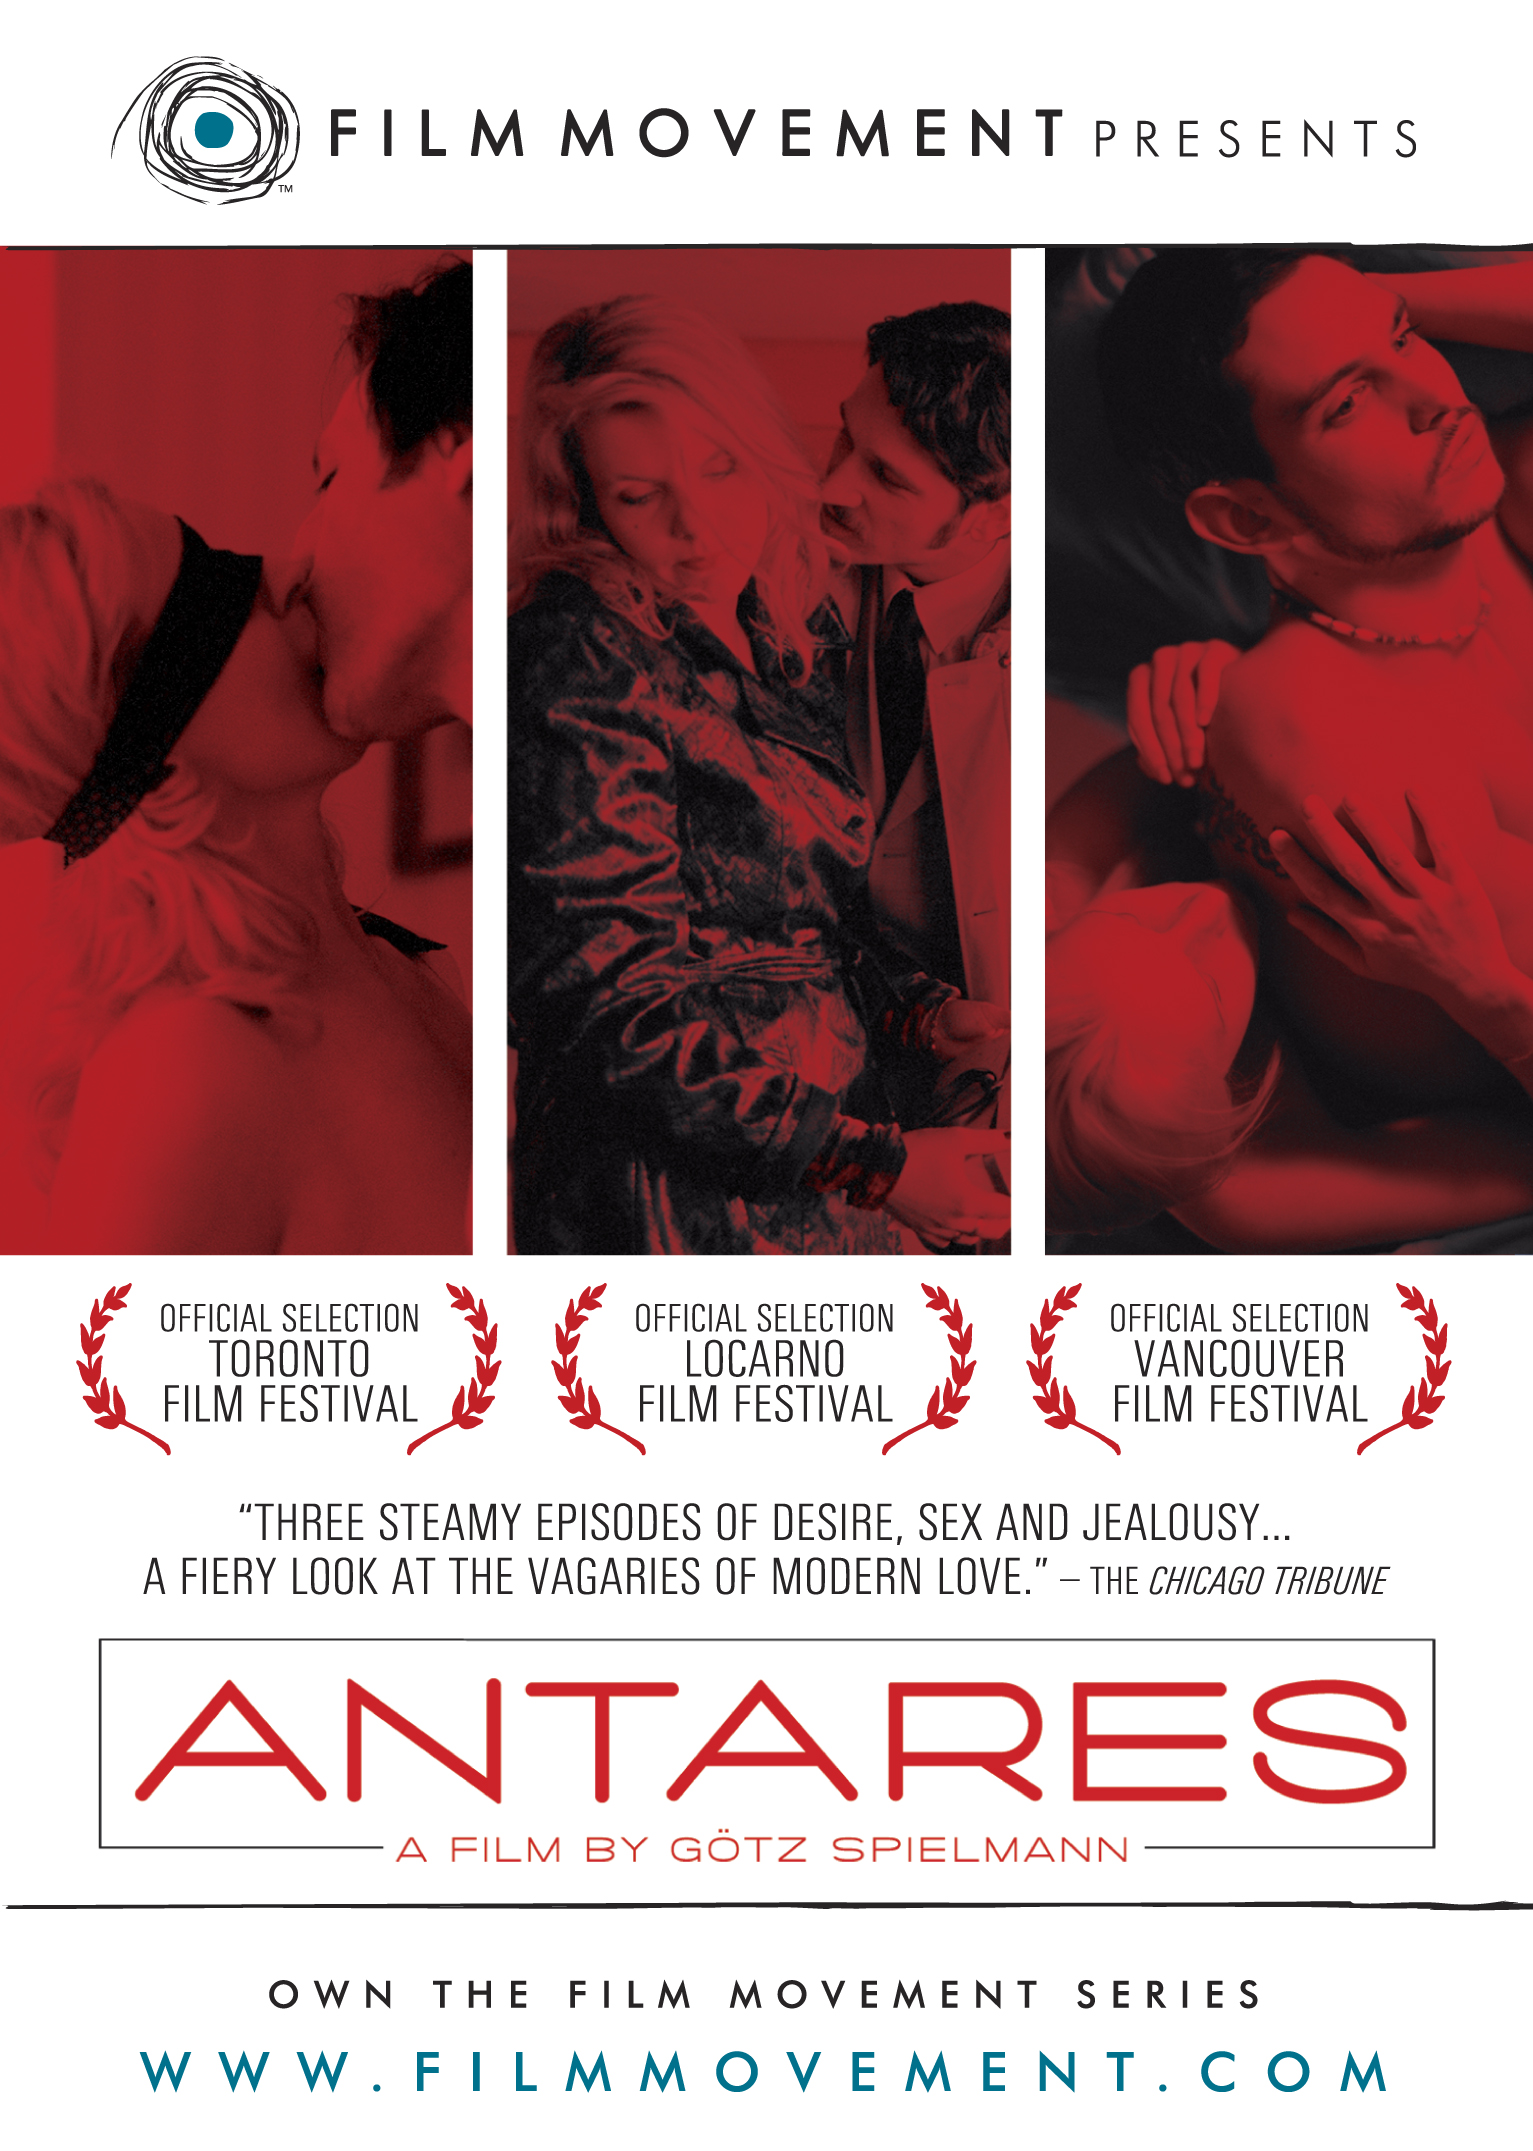 Antares (2004) Screenshot 1 